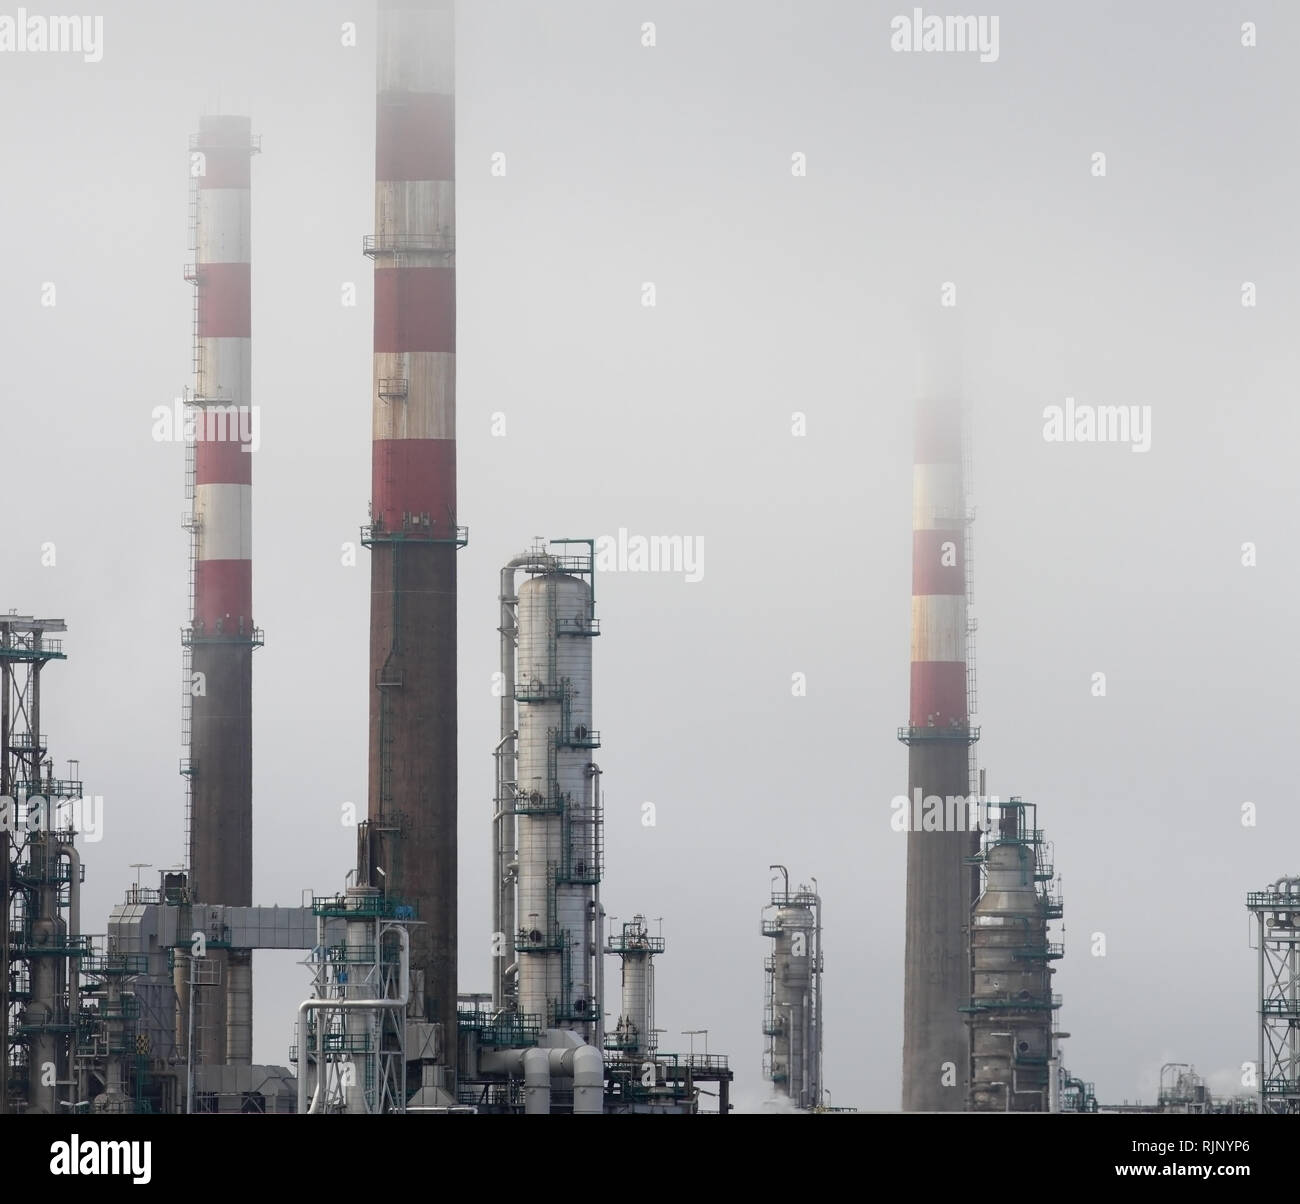 Les cheminées de la raffinerie de pétrole et des tours entre le brouillard Banque D'Images